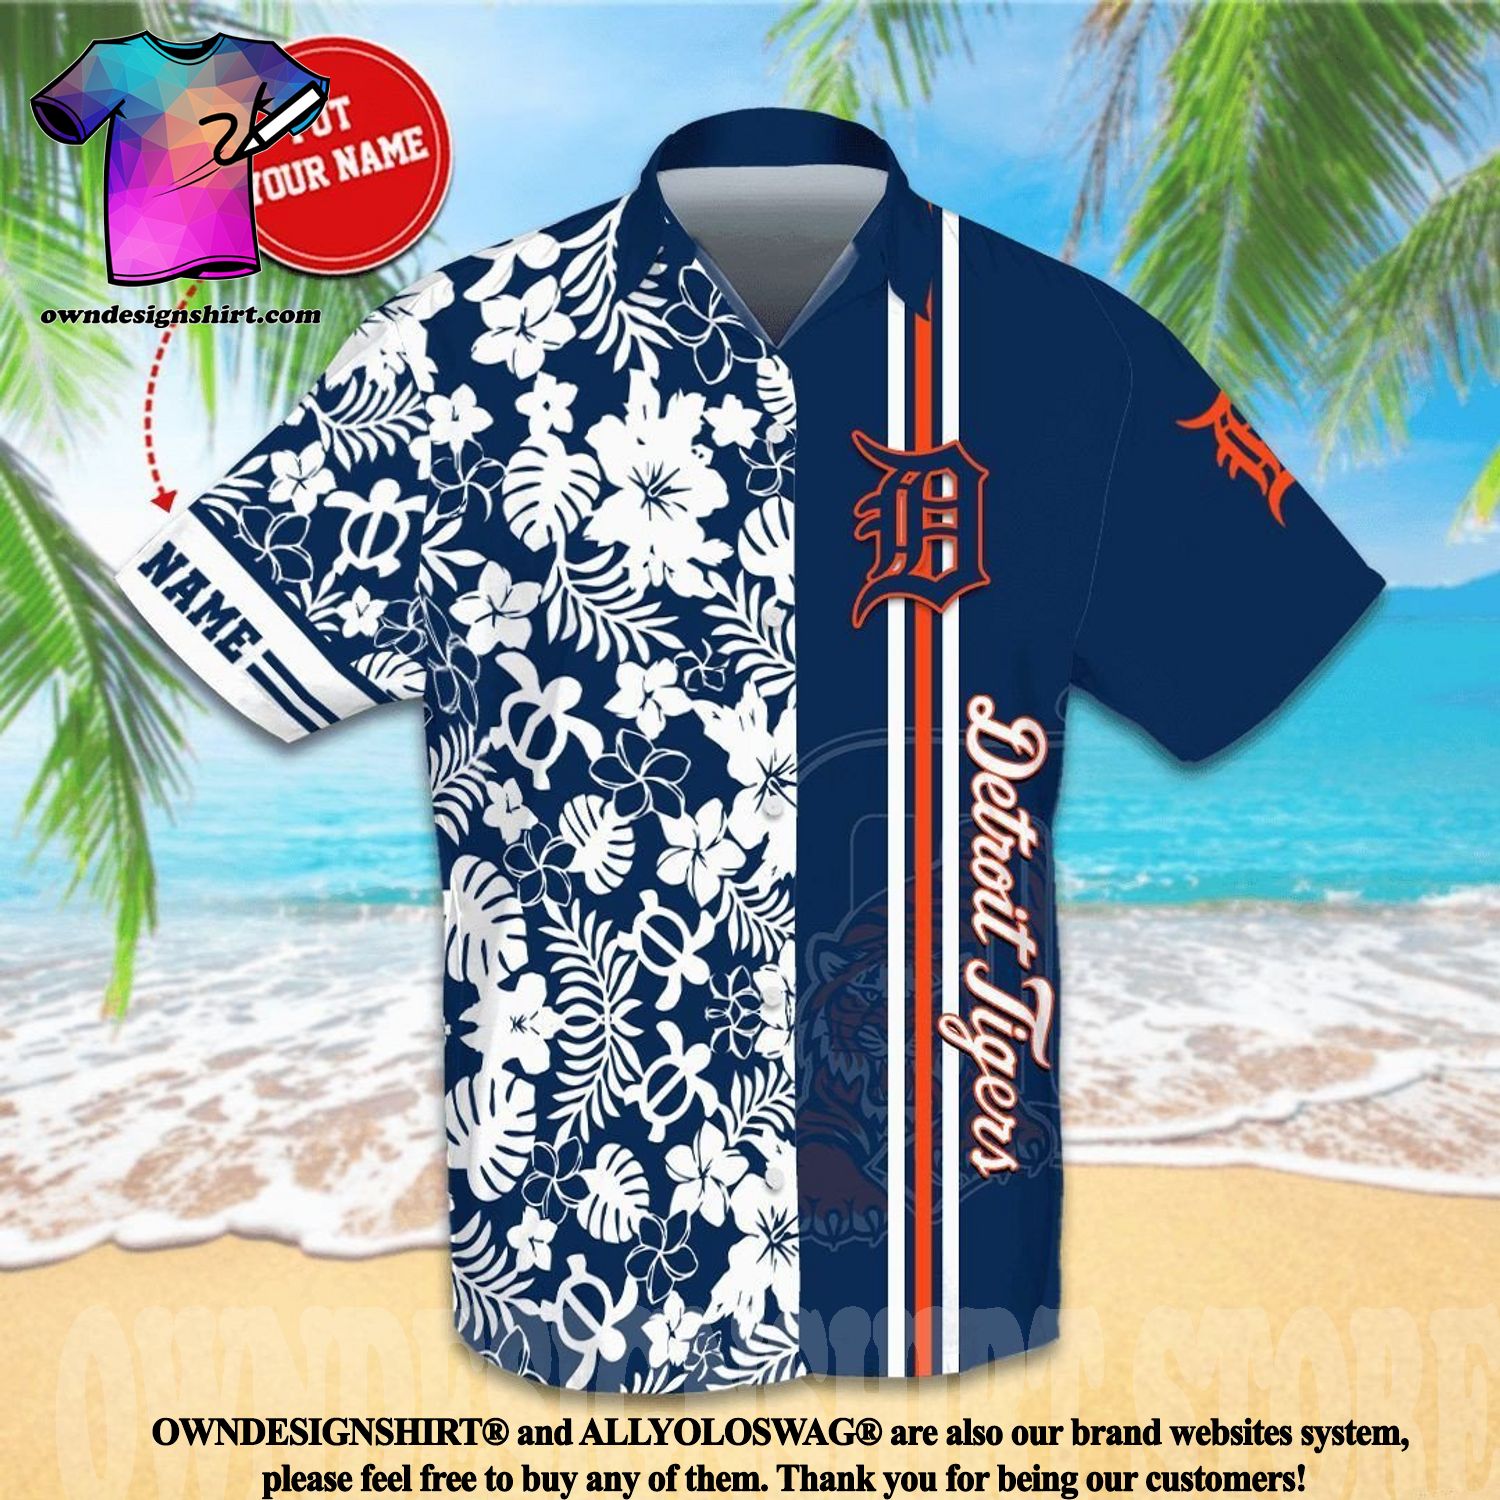 Detroit Tigers Jersey Hawaiian Shirt And Short Set Gift Men Women